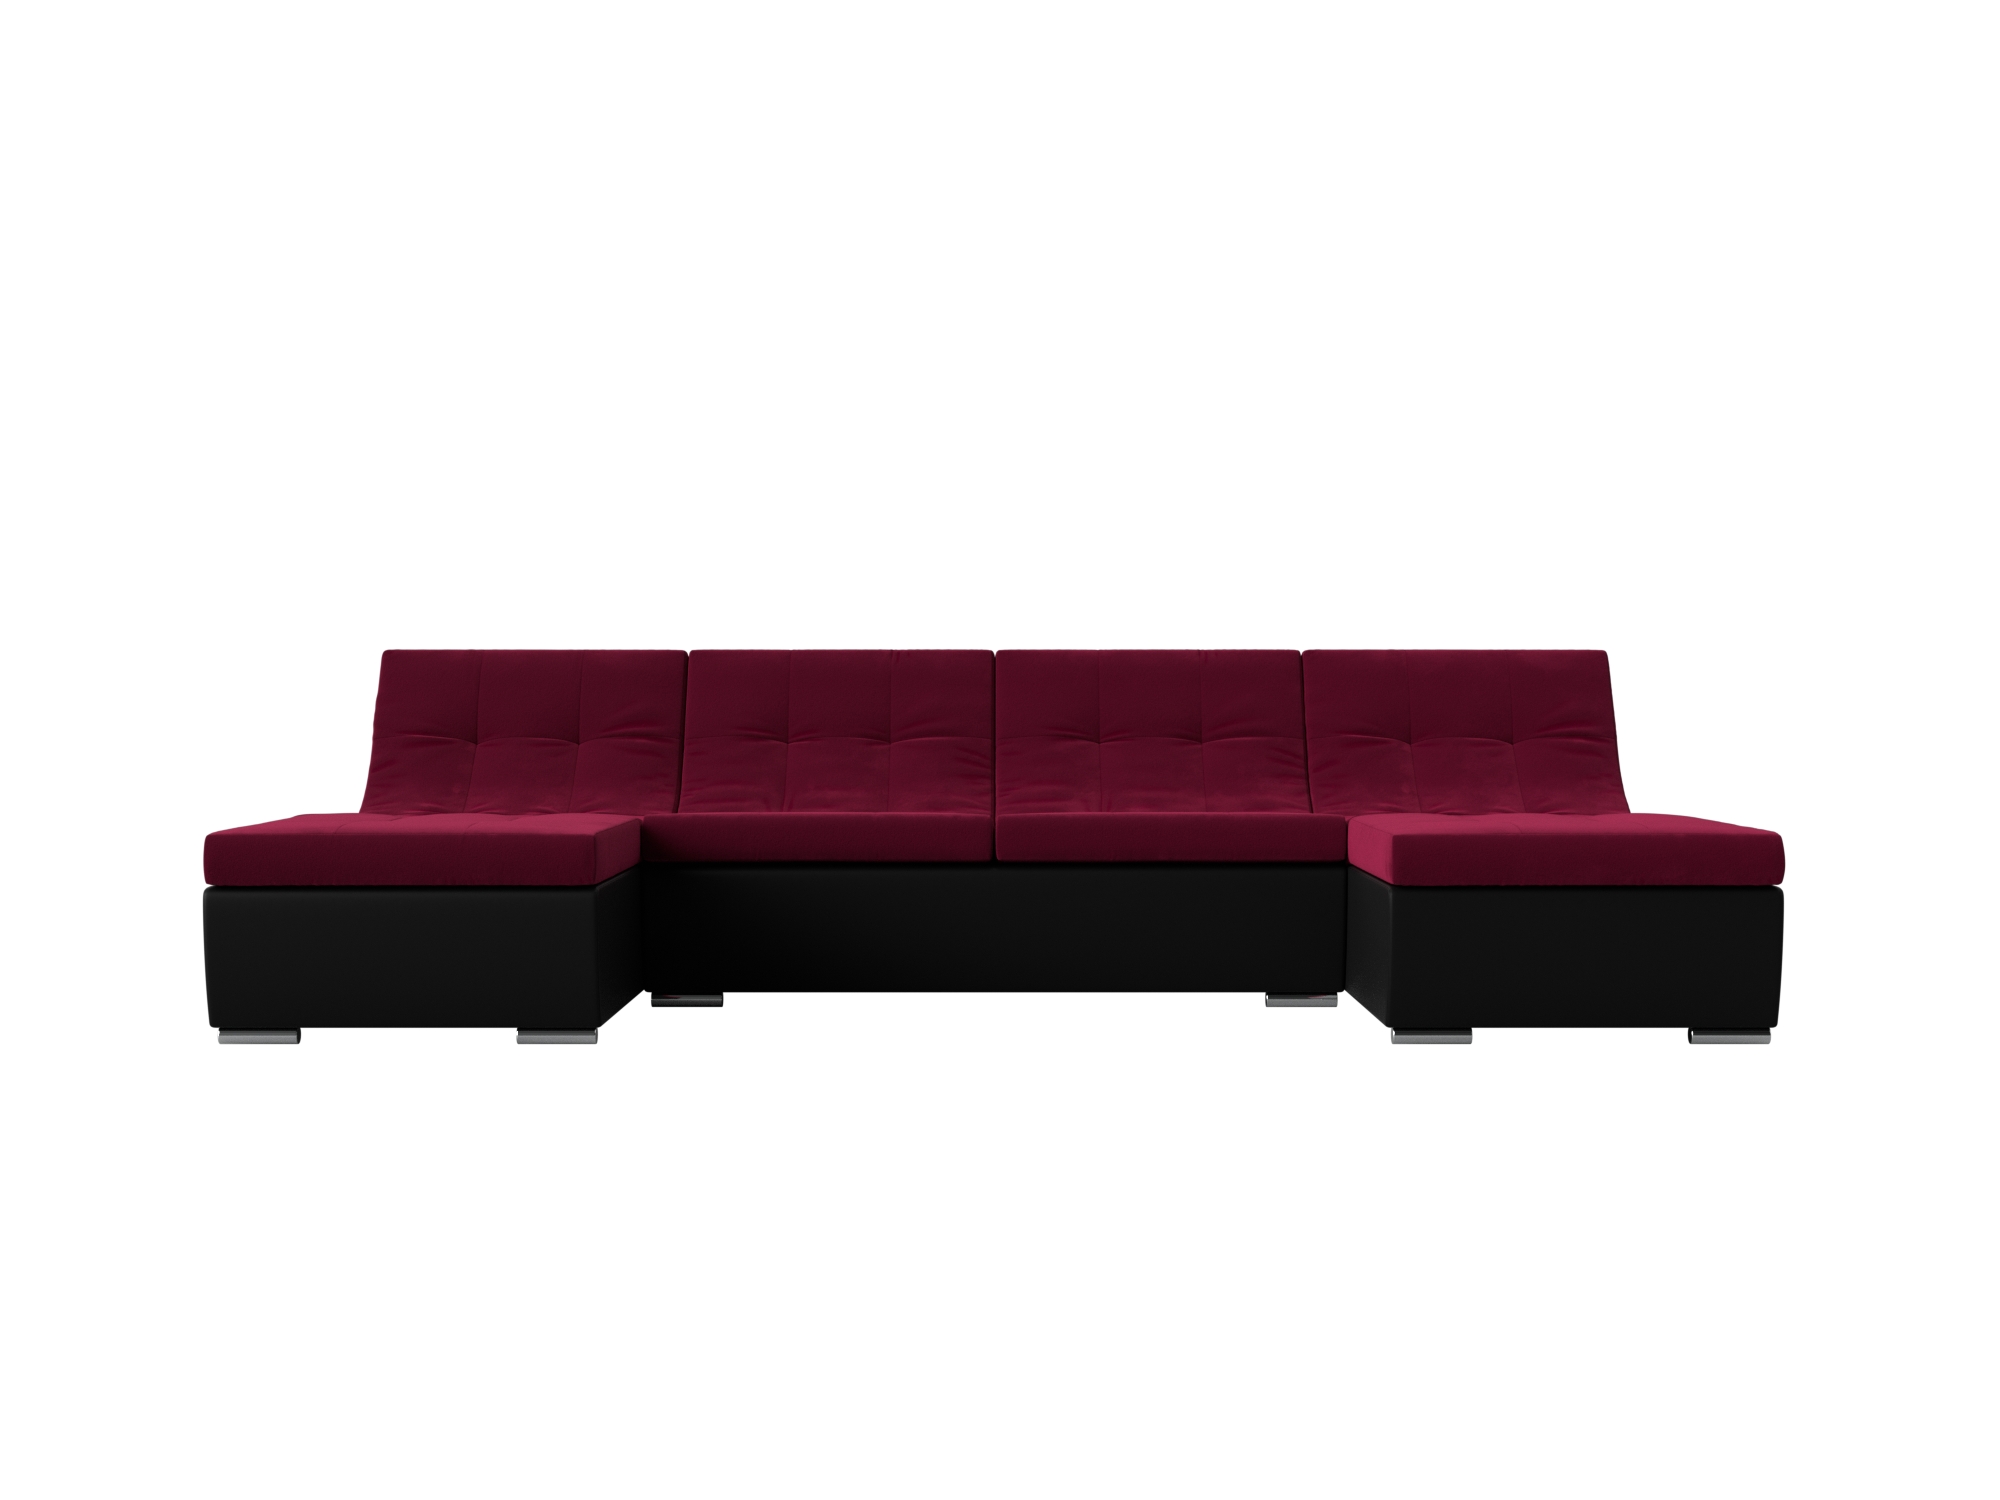 П-образный модульный диван Монреаль MebelVia Красный, Черный, Микровельвет, Экокожа, ЛДСП п образный модульный диван монреаль long mebelvia фиолетовый черный микровельвет экокожа лдсп